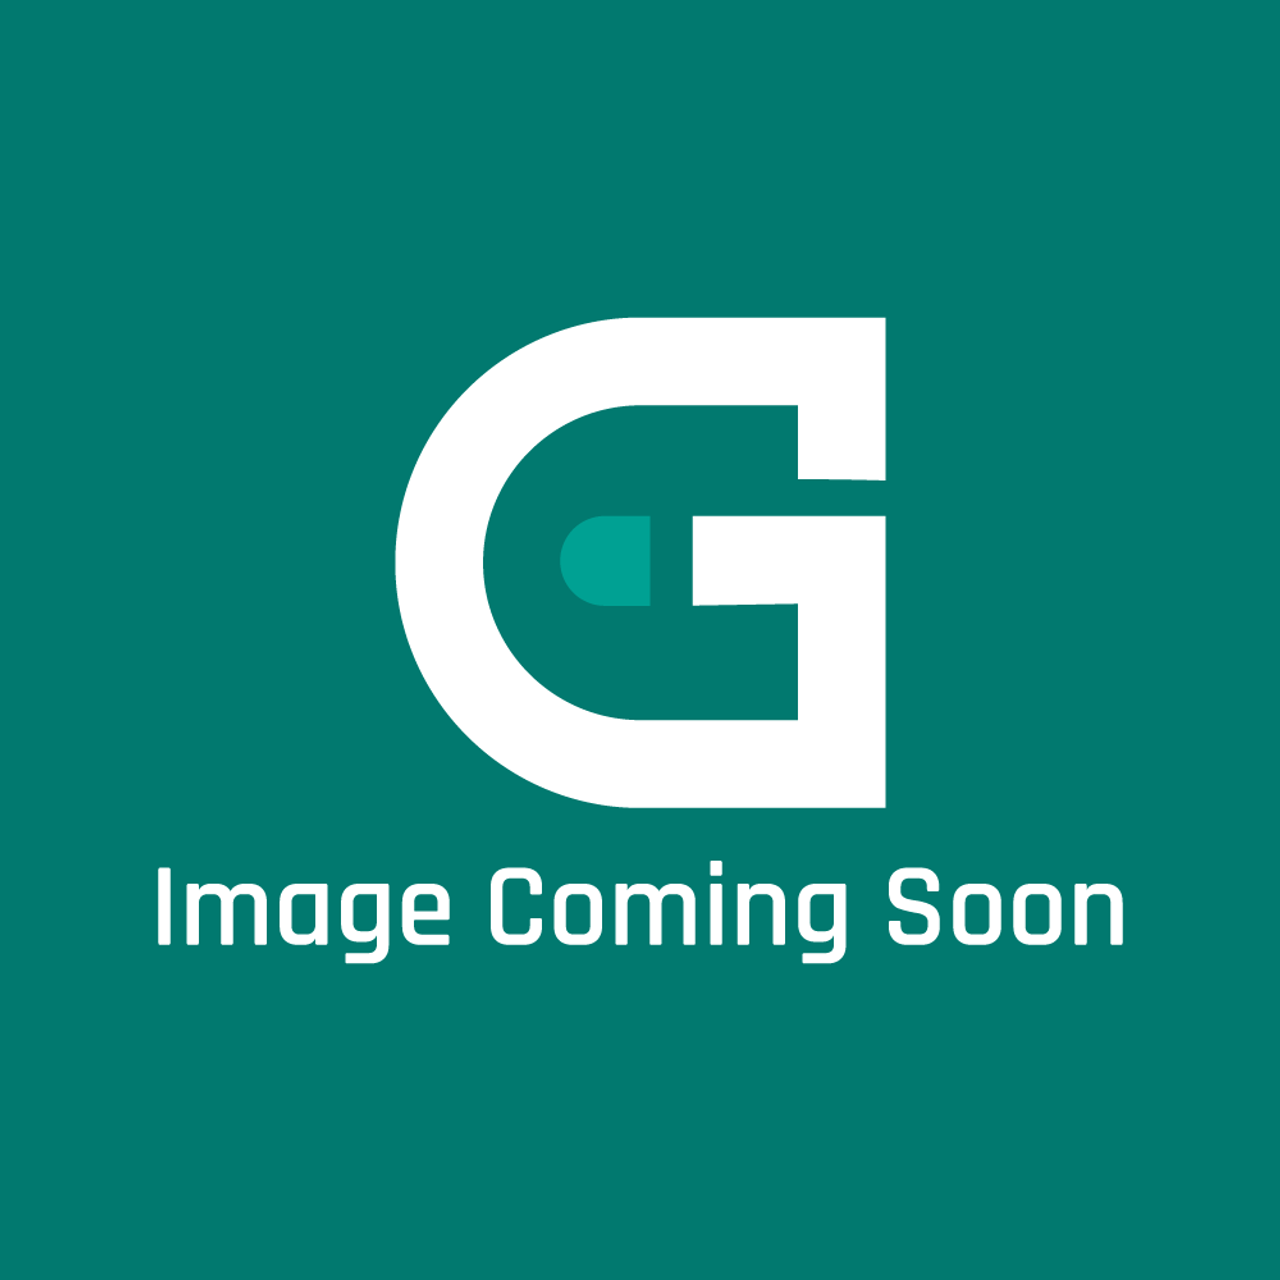 Groen MS1041 - Tda/1-40 Asme - Image Coming Soon!